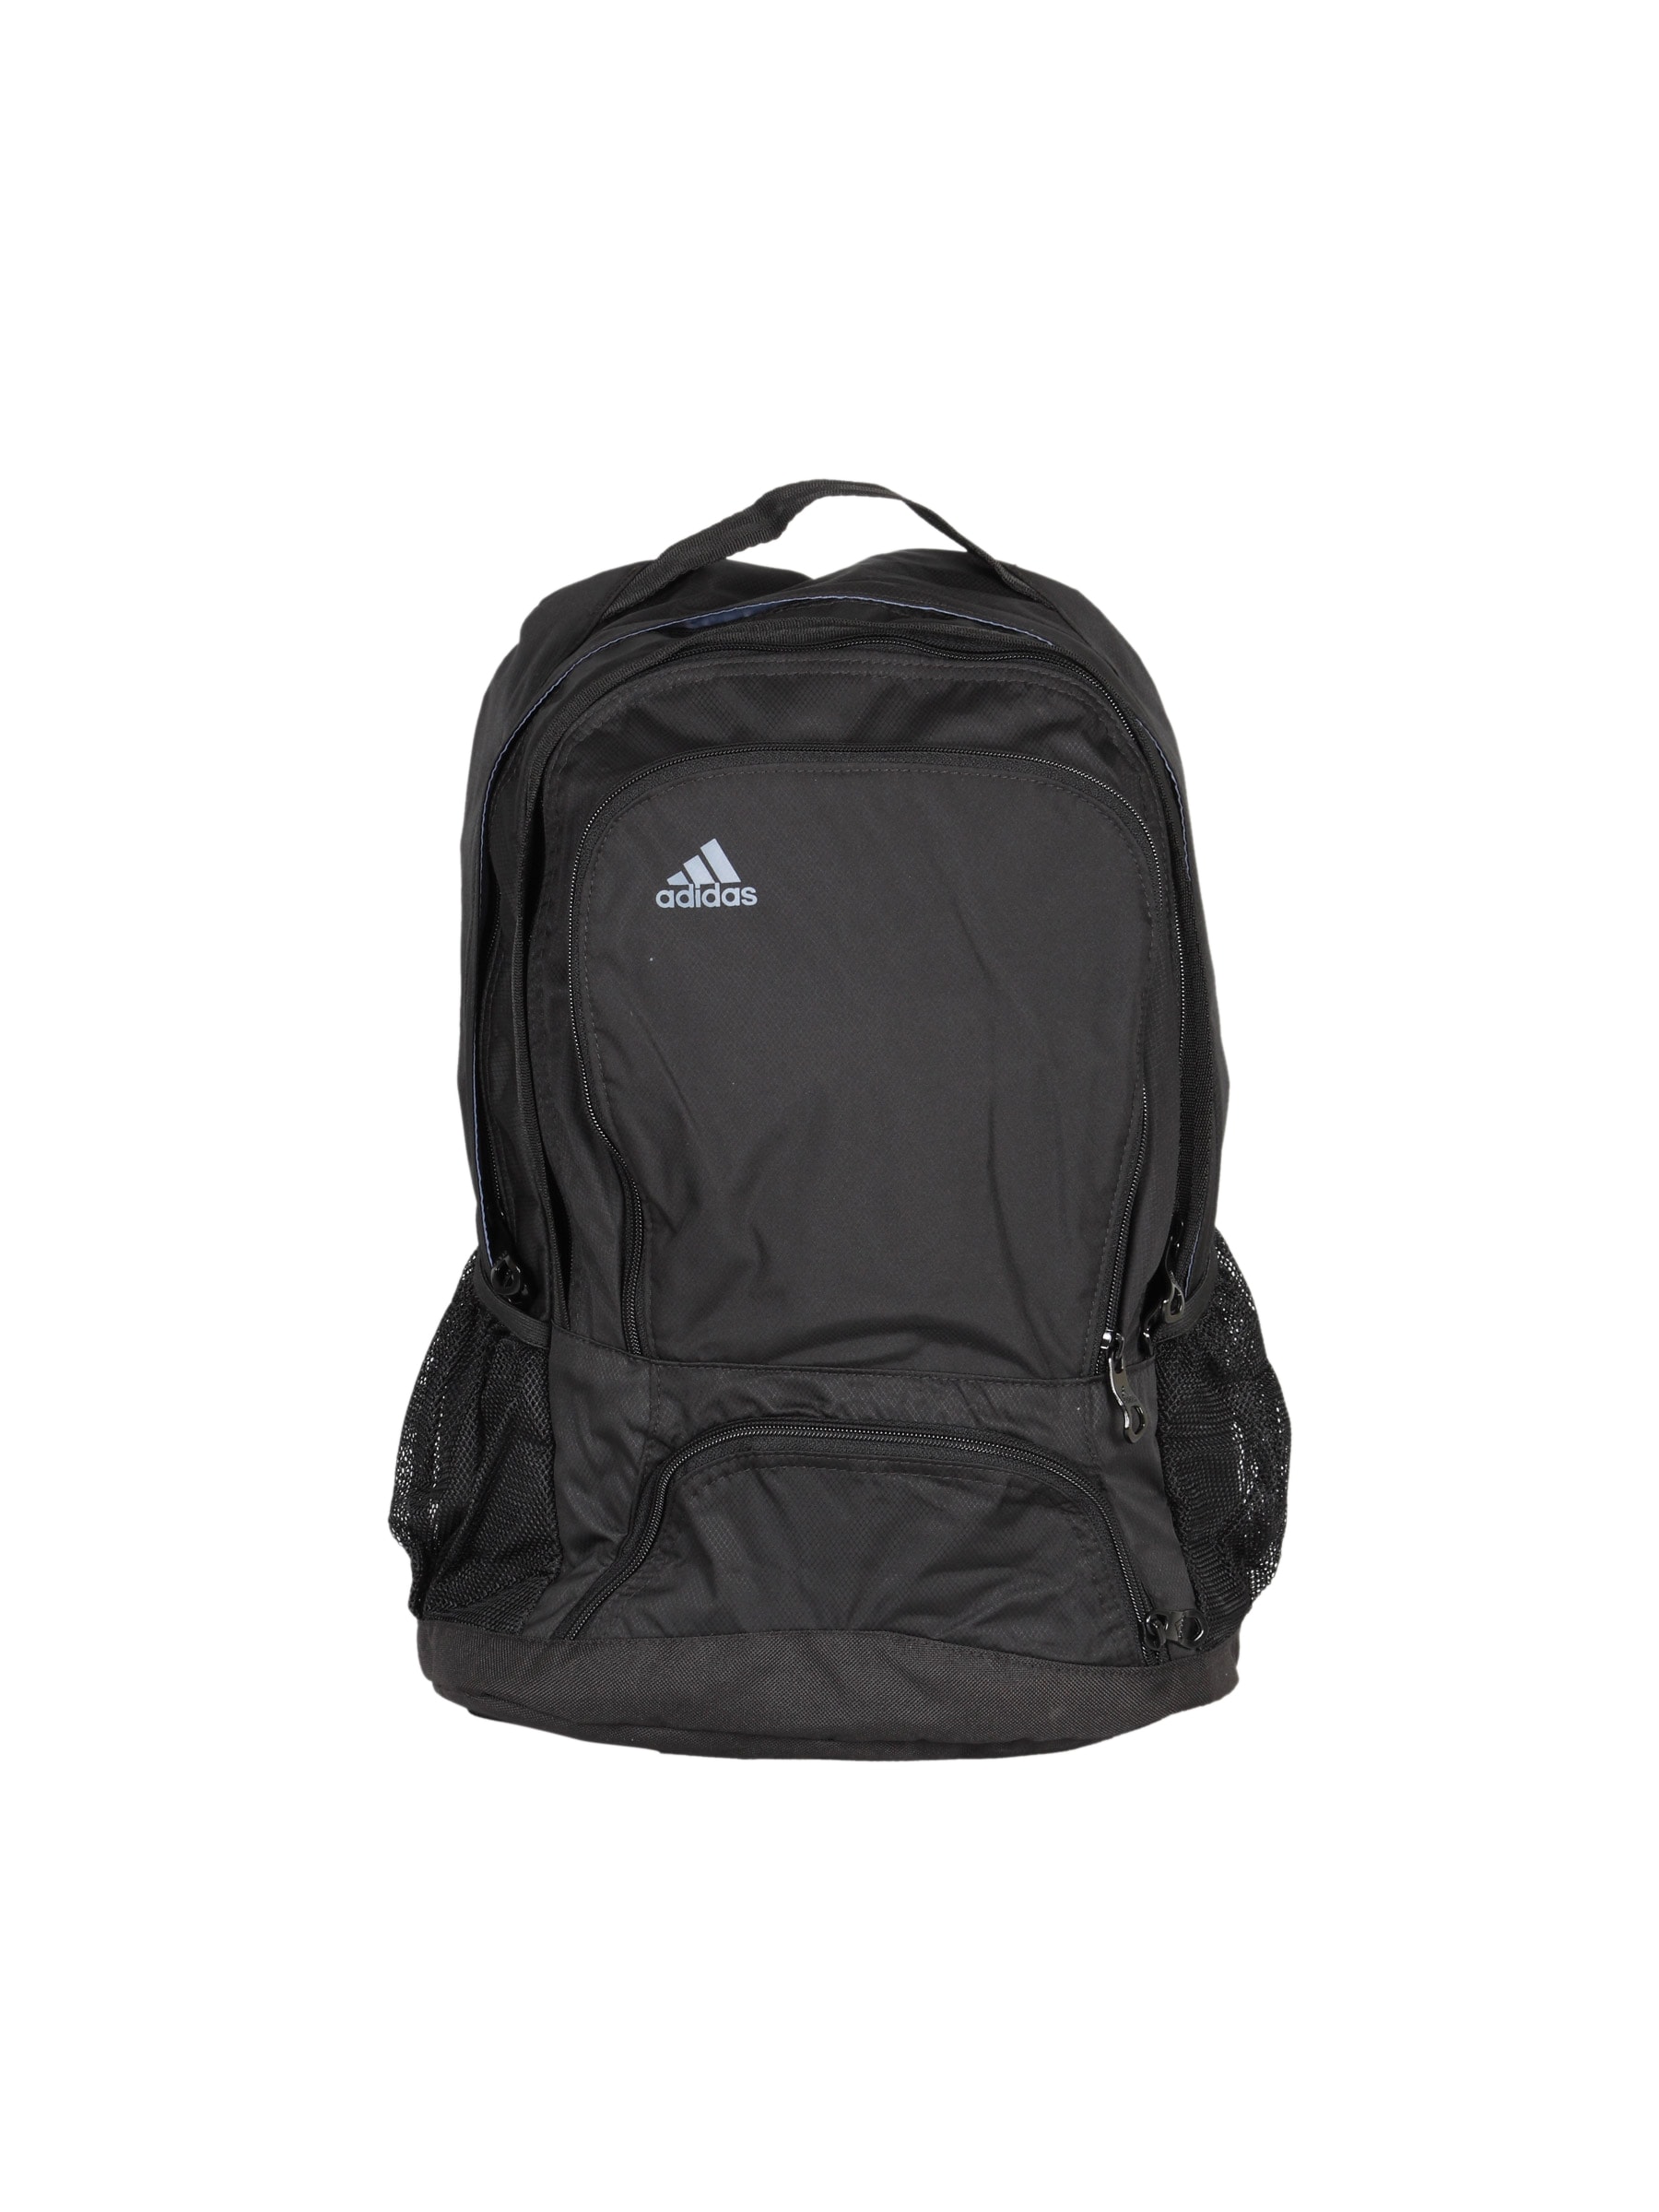 ADIDAS Multi Black Unisex Backpack